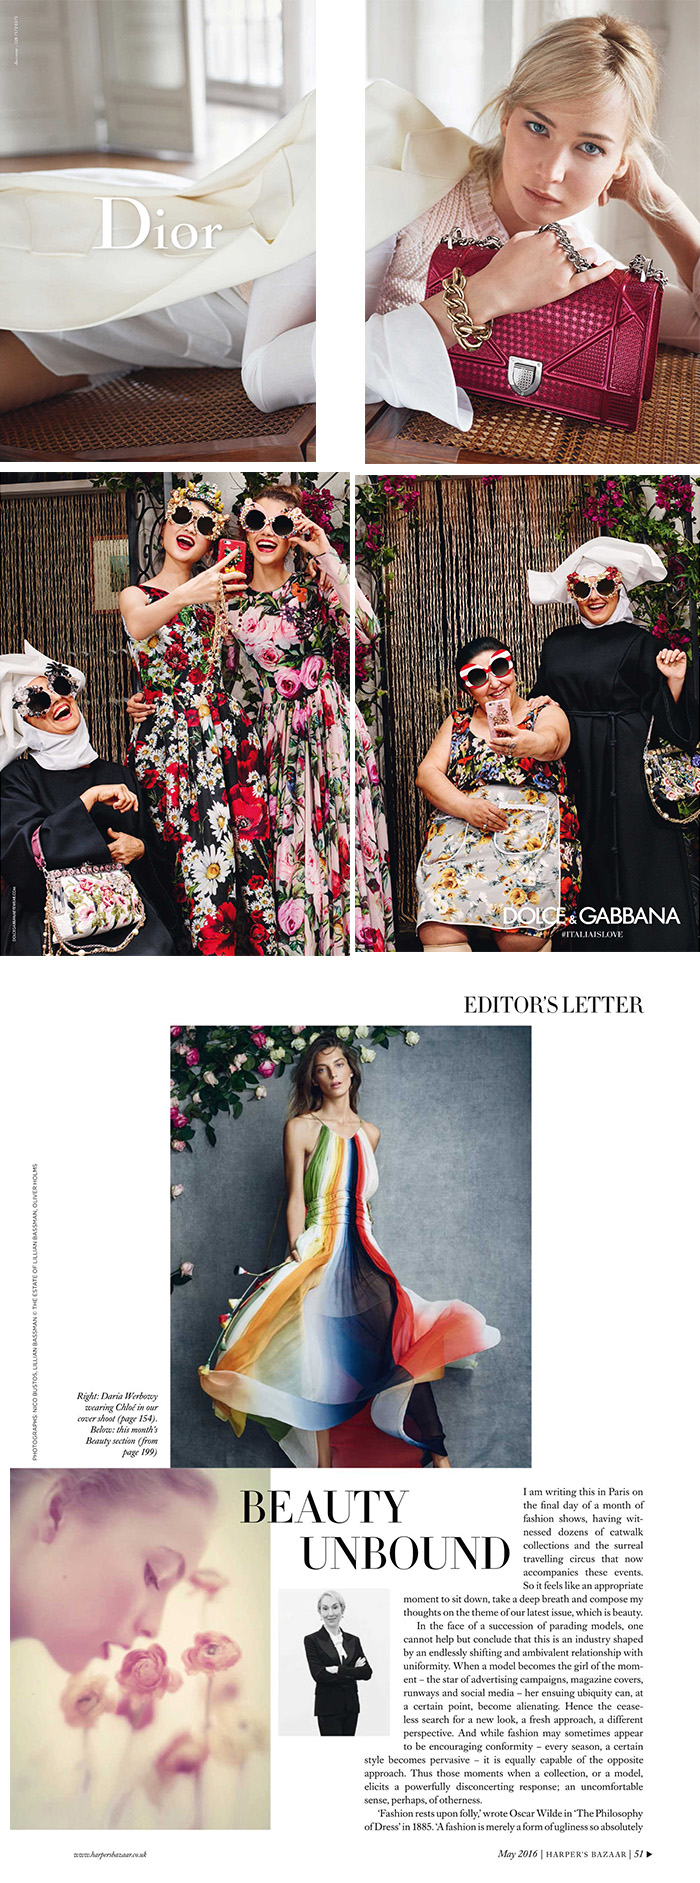 英国版Harpers Bazaar-时尚杂志订阅电子版PDF免费下载-2016年5月